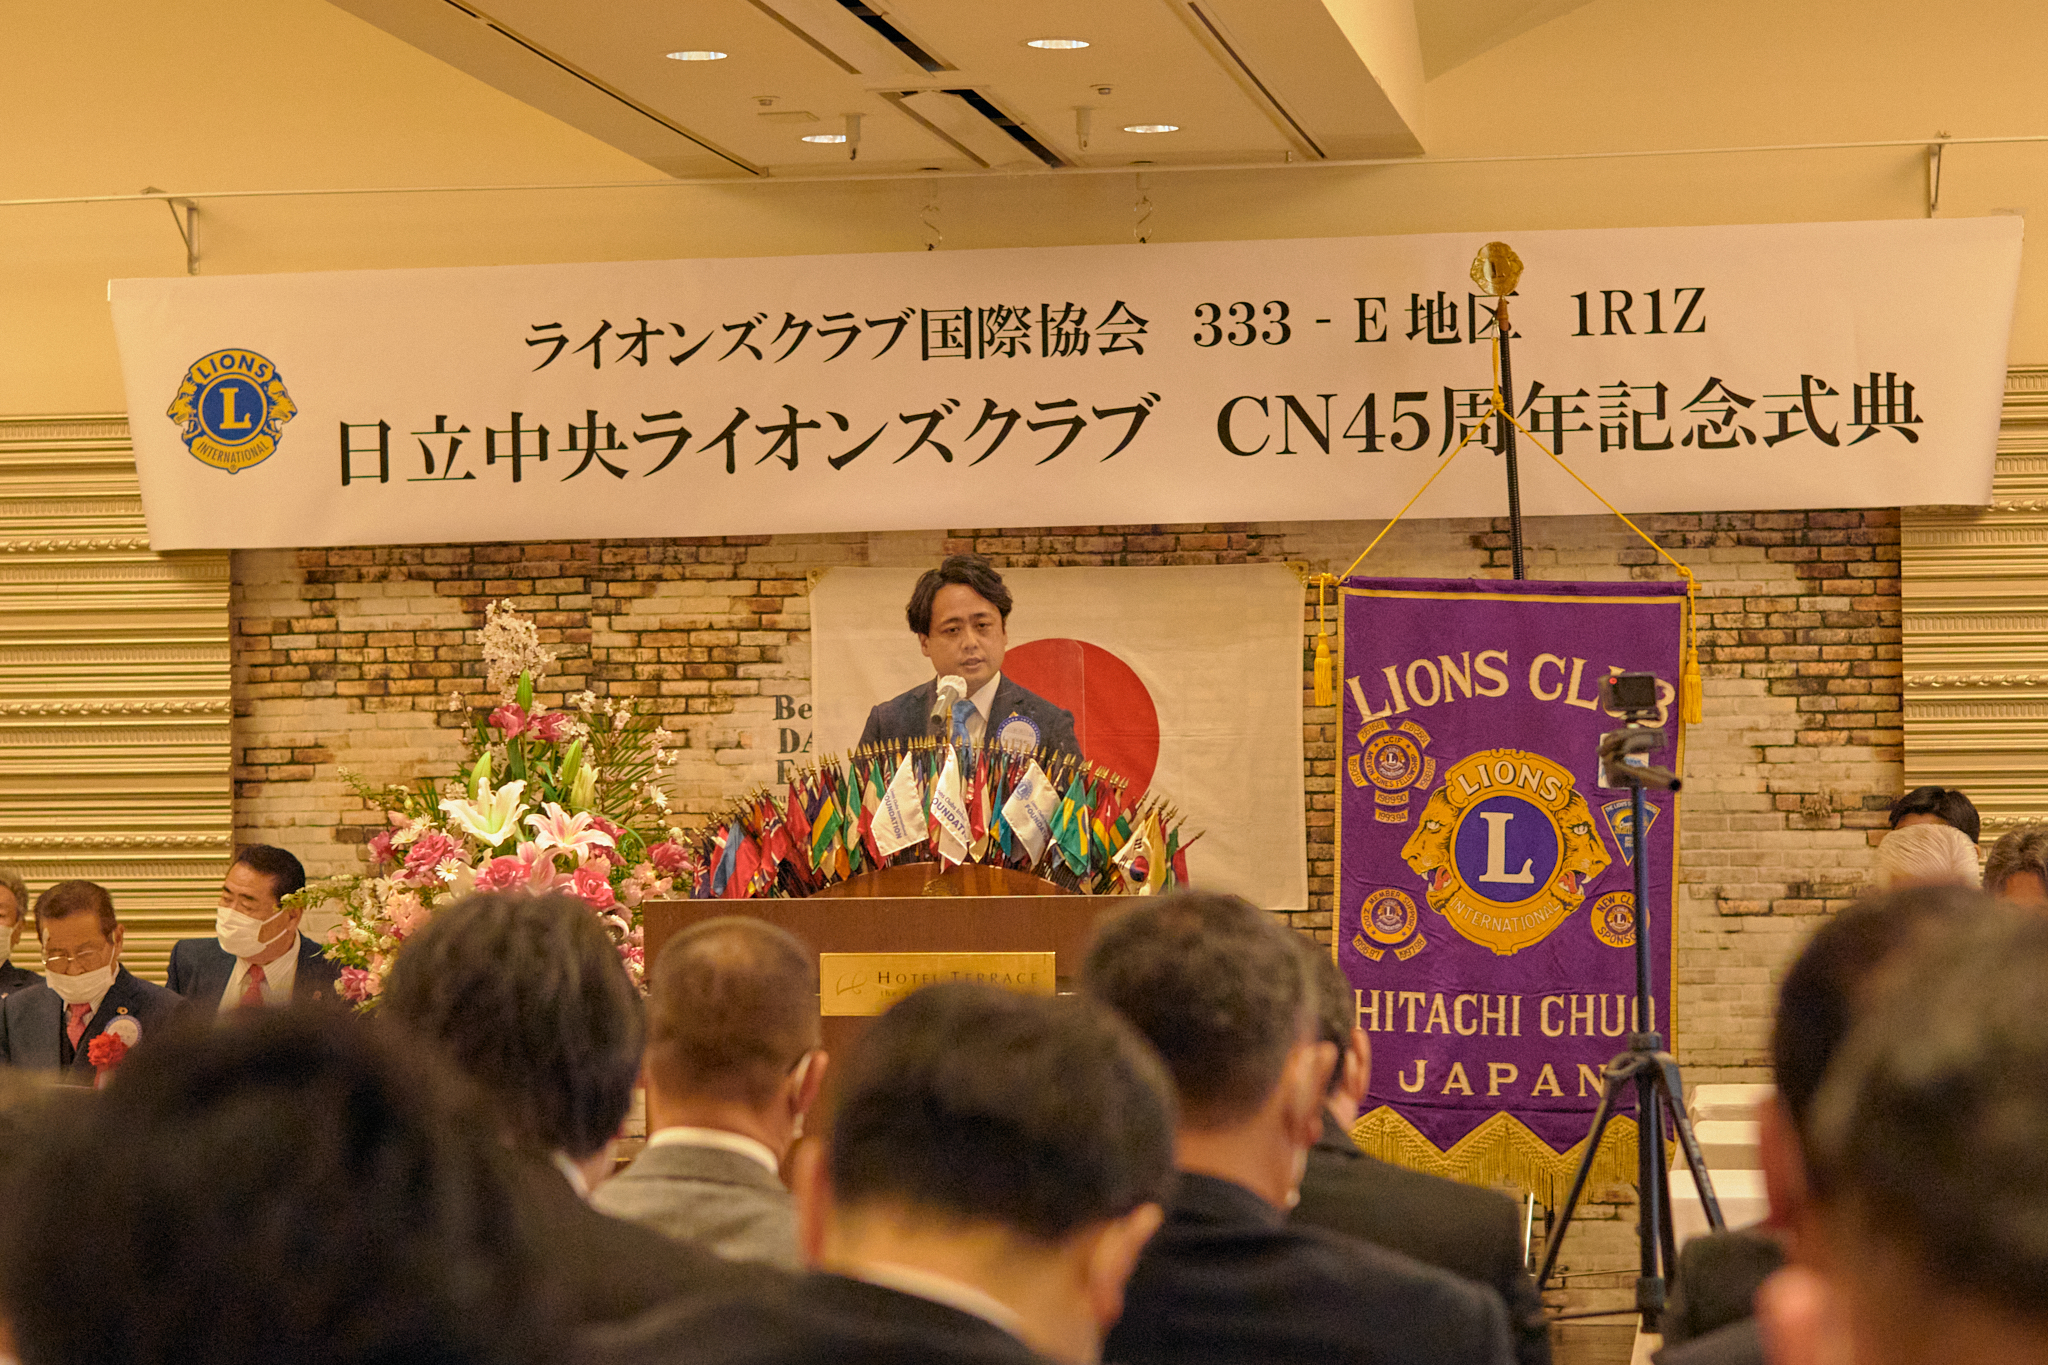 日立中央ライオンズクラブCN45周年記念式典 ひたちなかベストライオンズクラブ